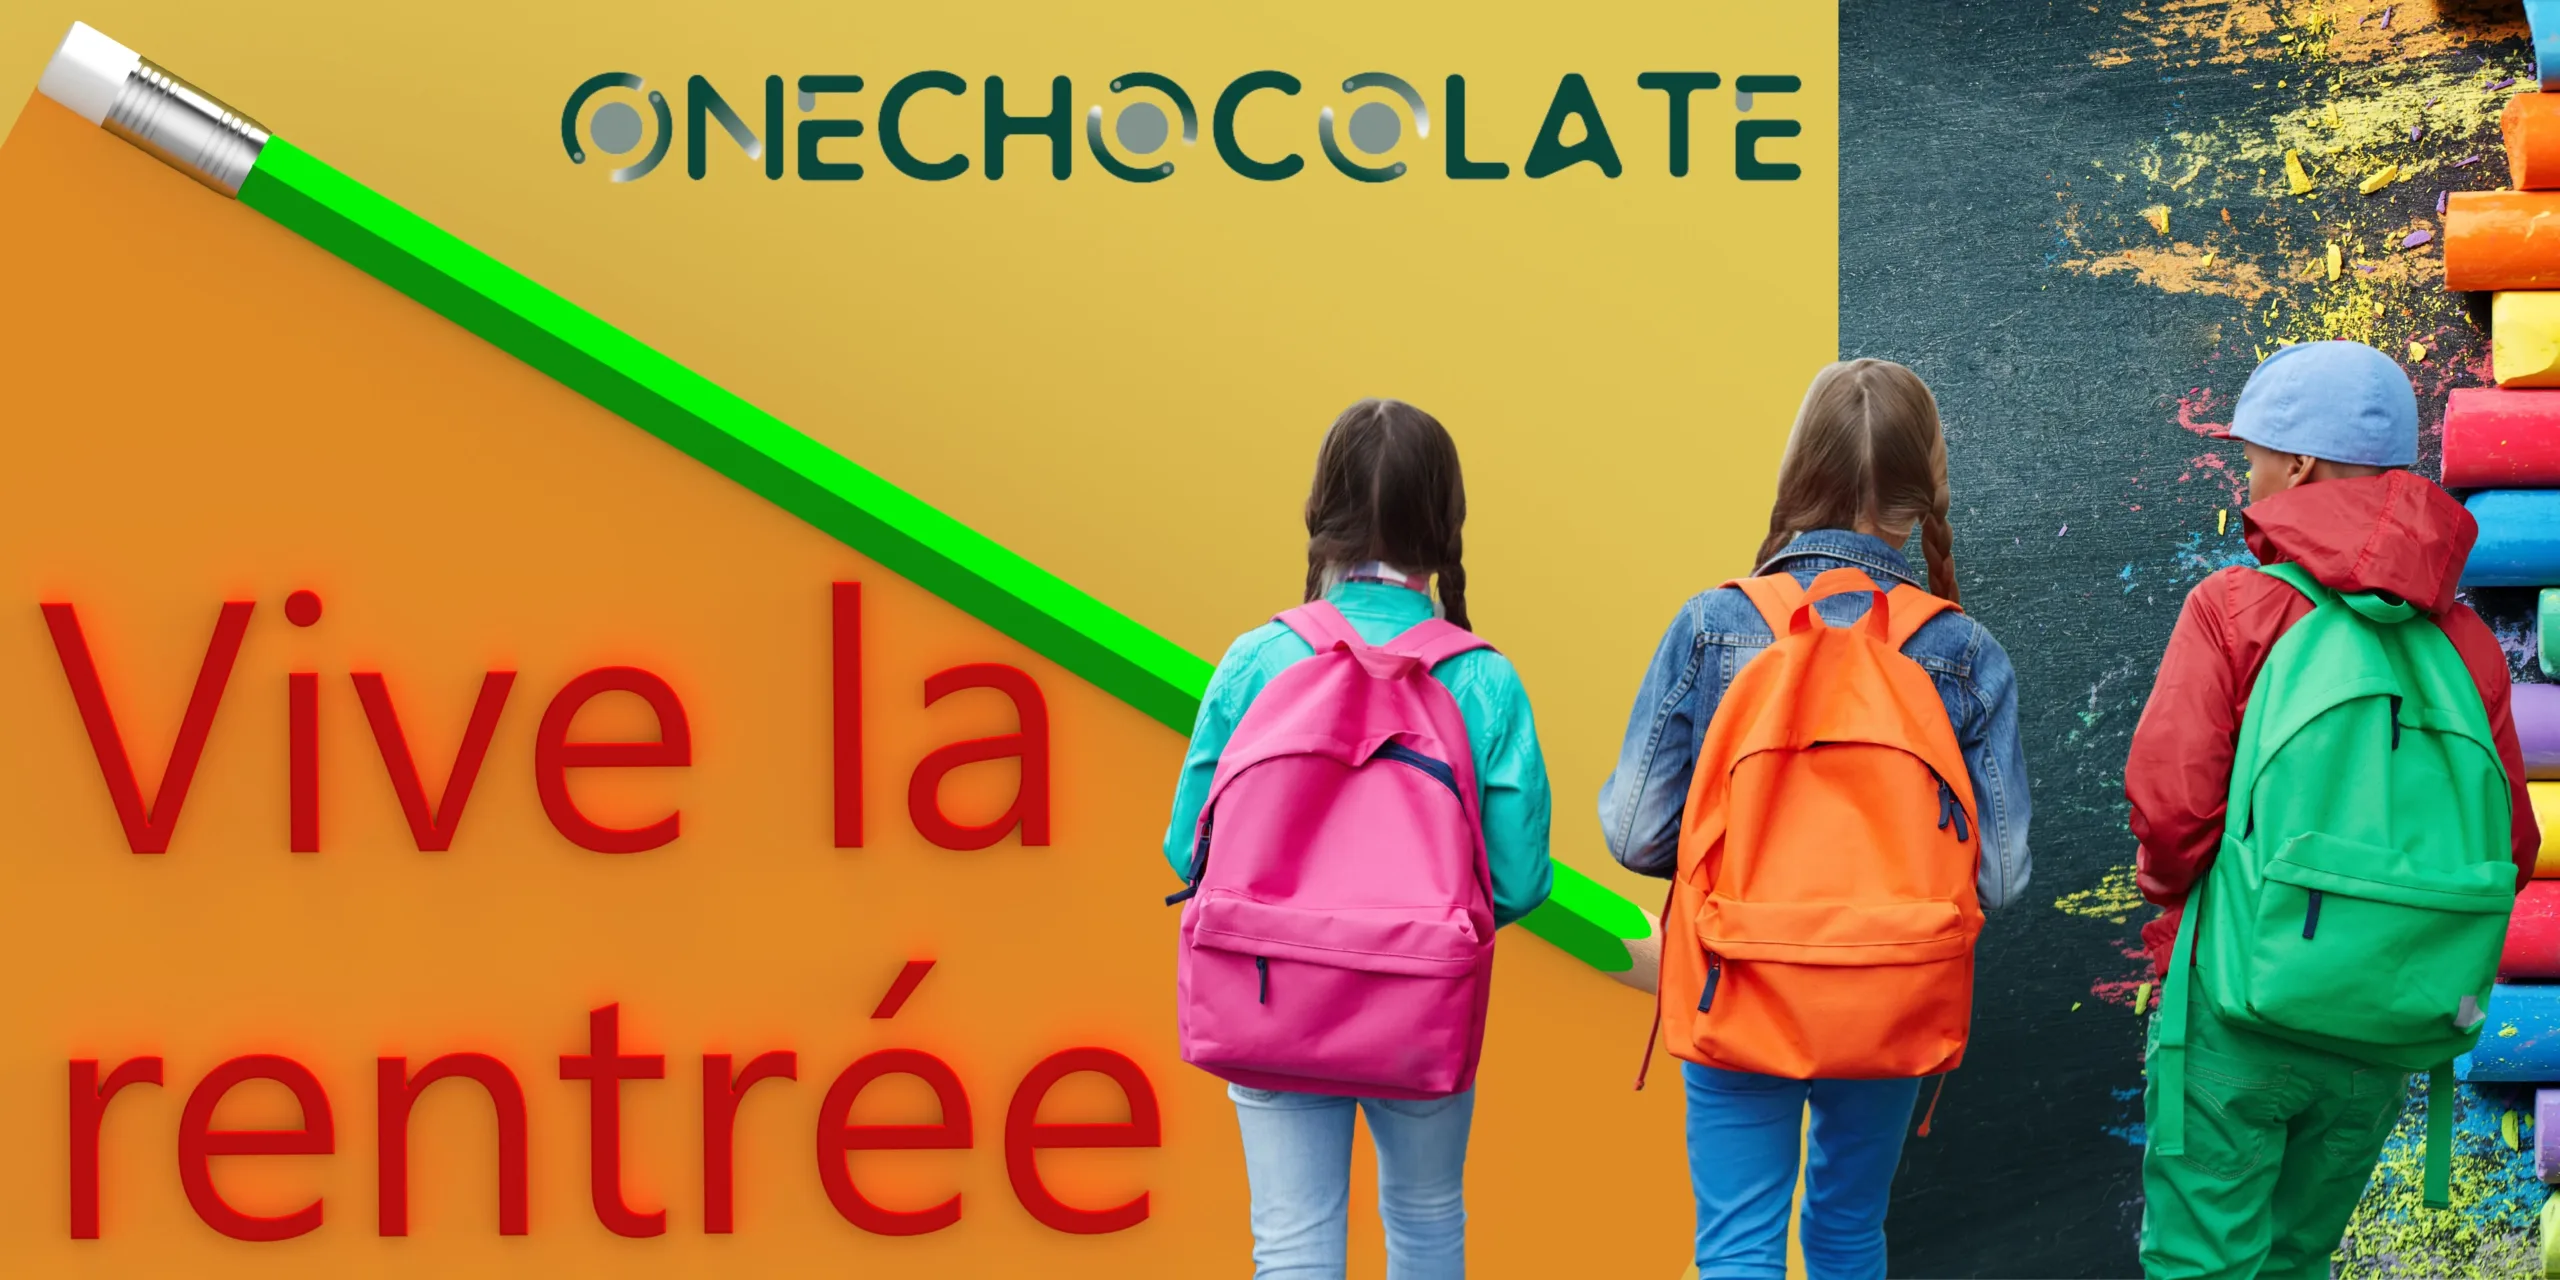 La rentrée des classes de OneChocolate